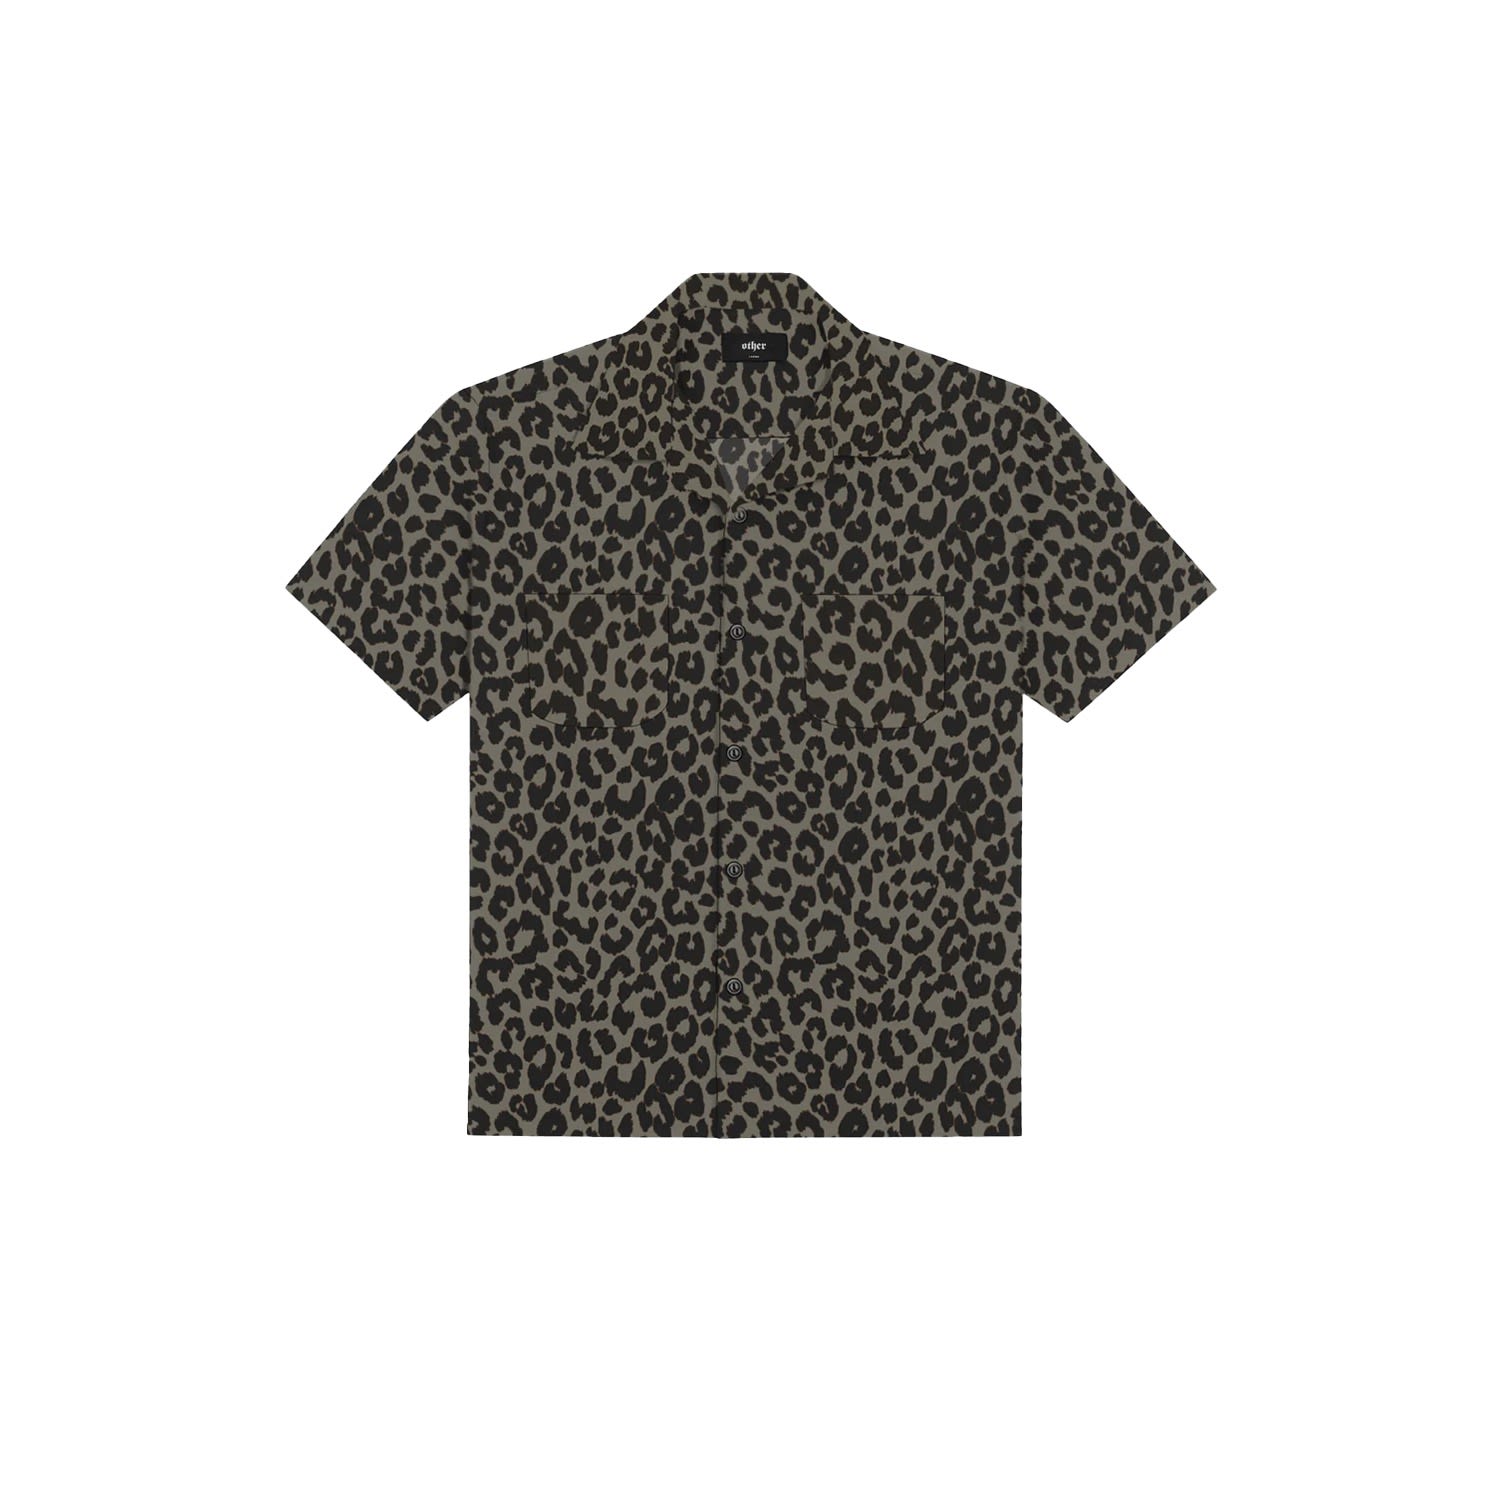 Men's Cuban Shirt - Leopard Camo Extra Small Wolf & Badger